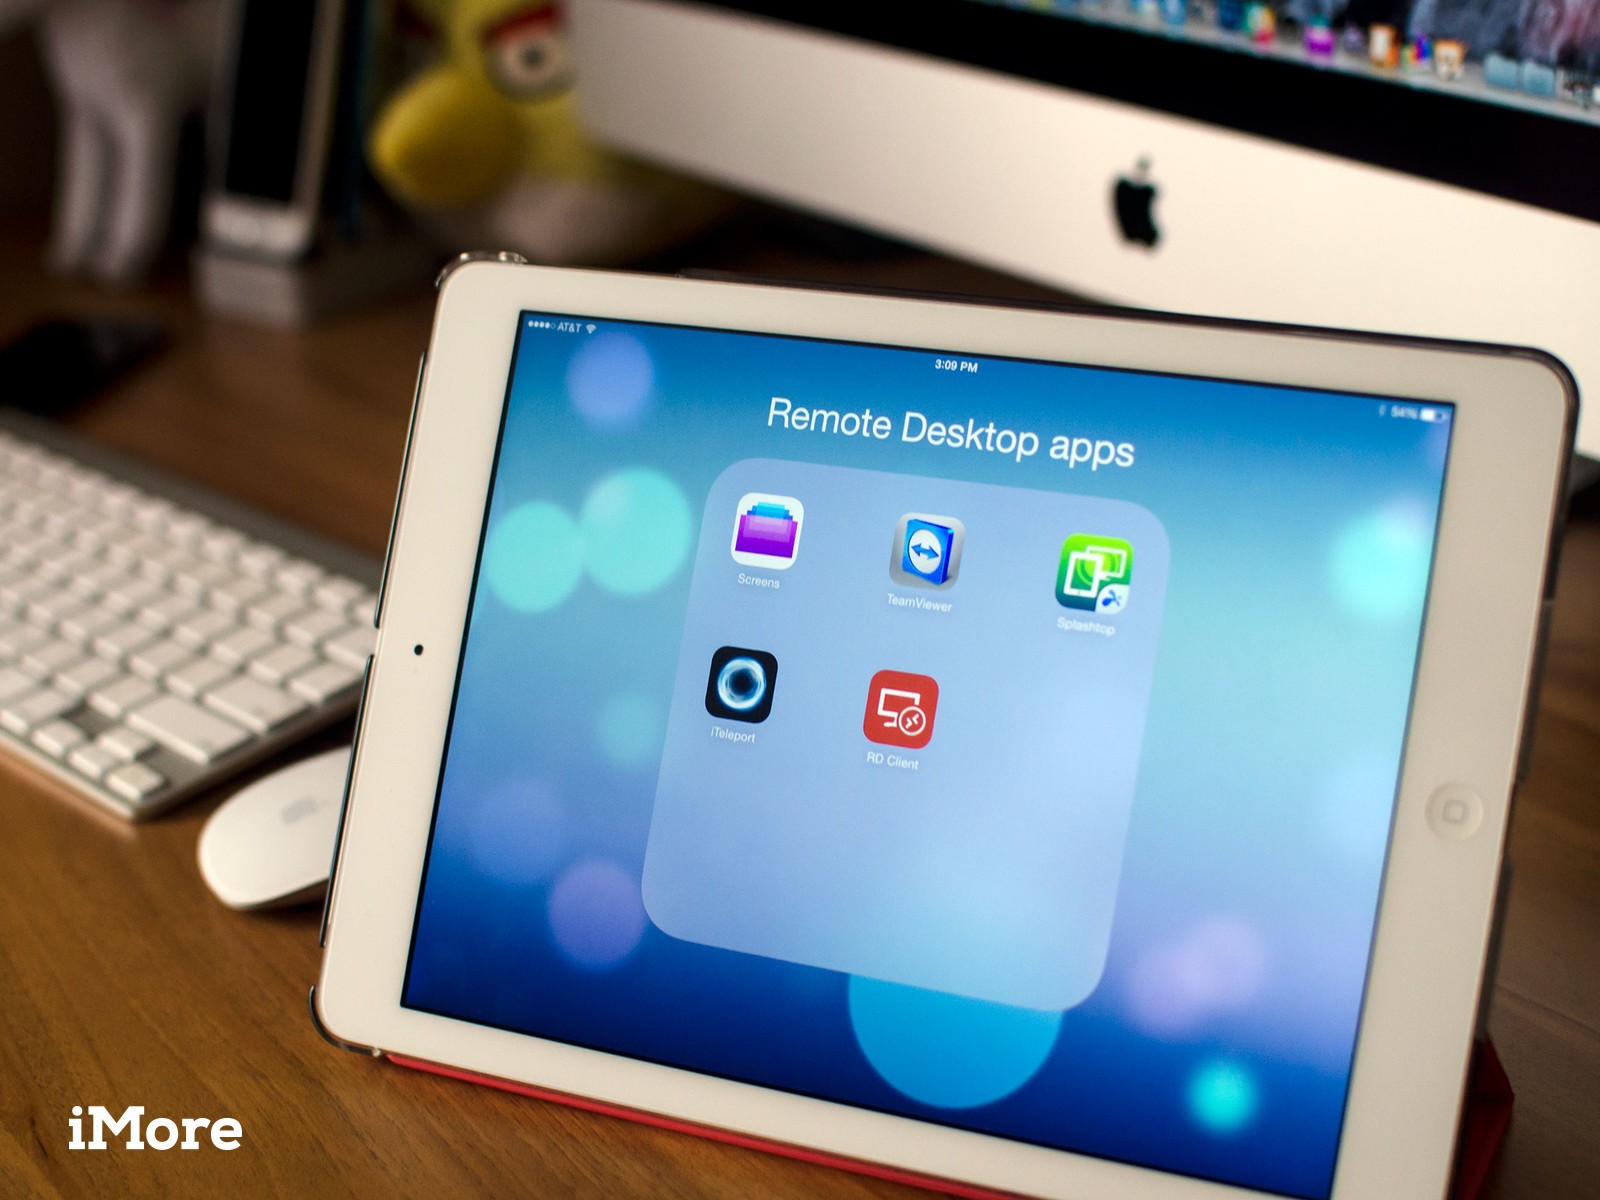 Remote Desktop Client App For Mac